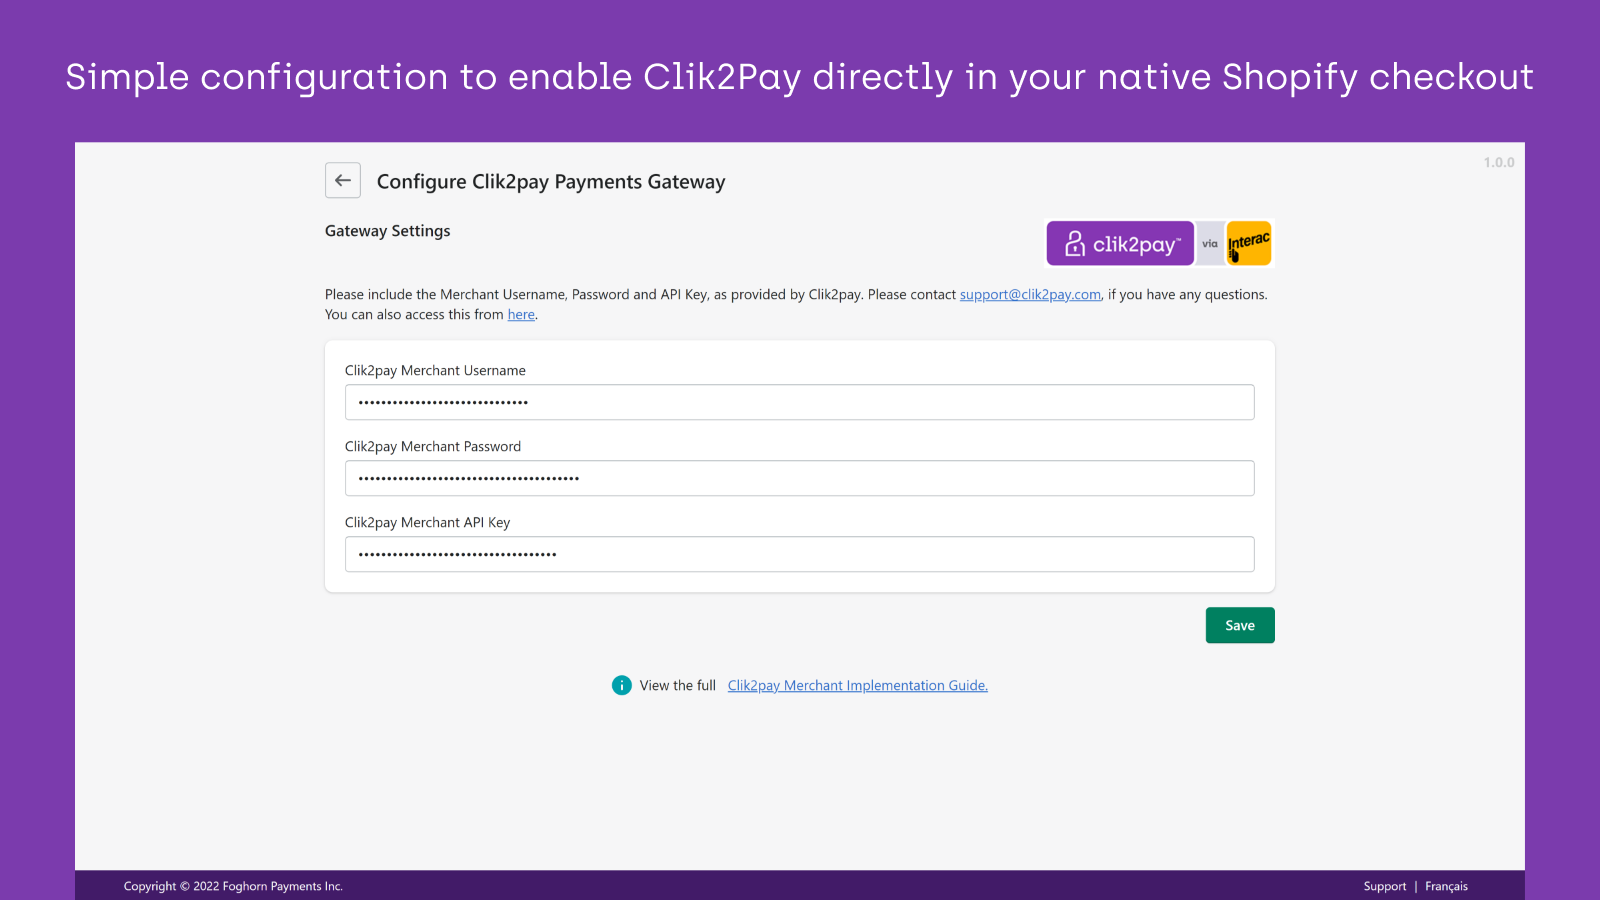 Configuração simples para habilitar Clik2Pay diretamente no Shopify